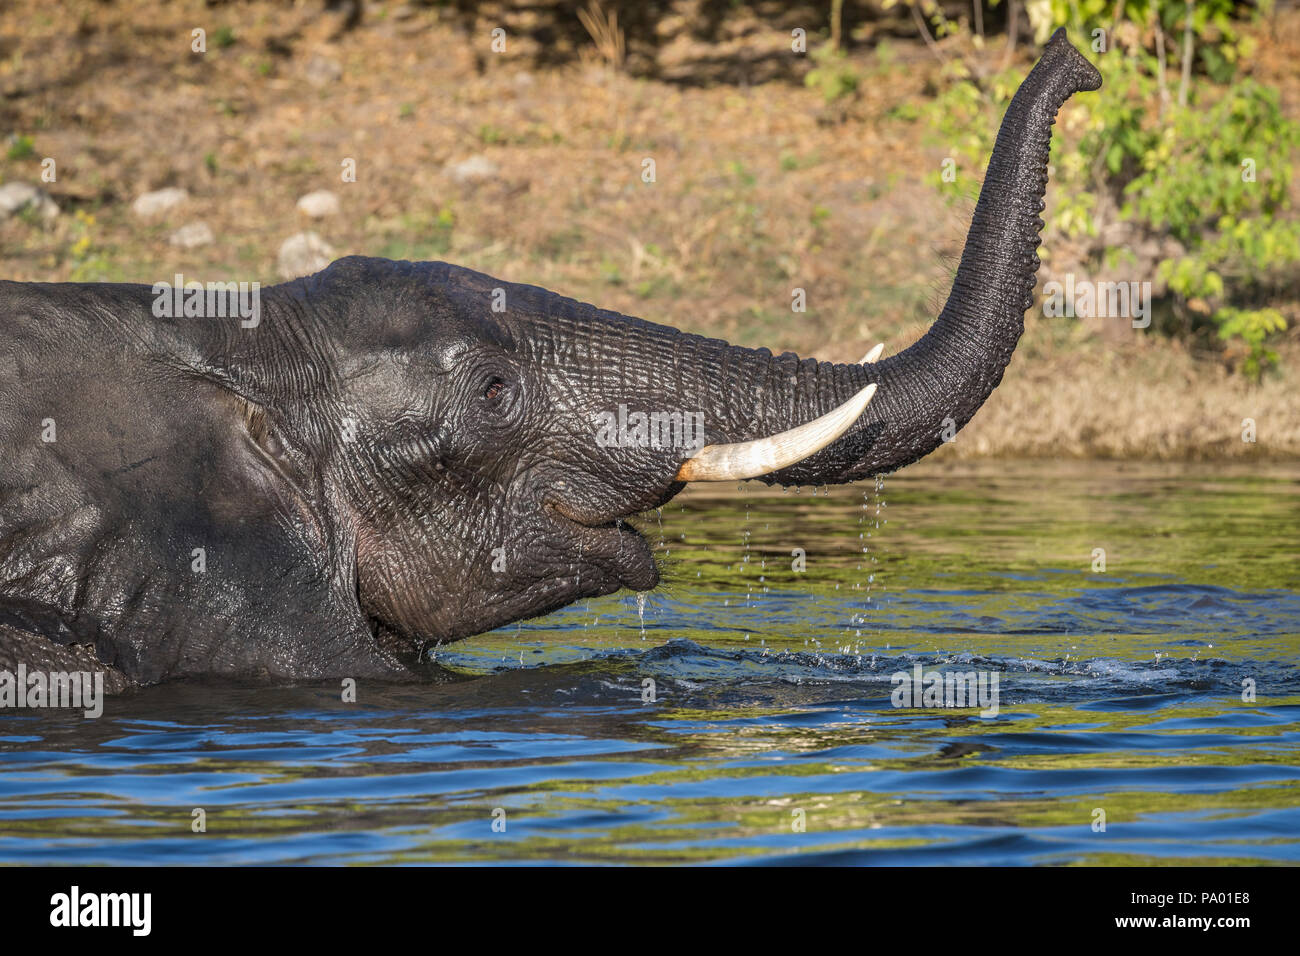 Elephant (Loxodonta africana) in Chobe river, Chobe national park, Botswana Stock Photo